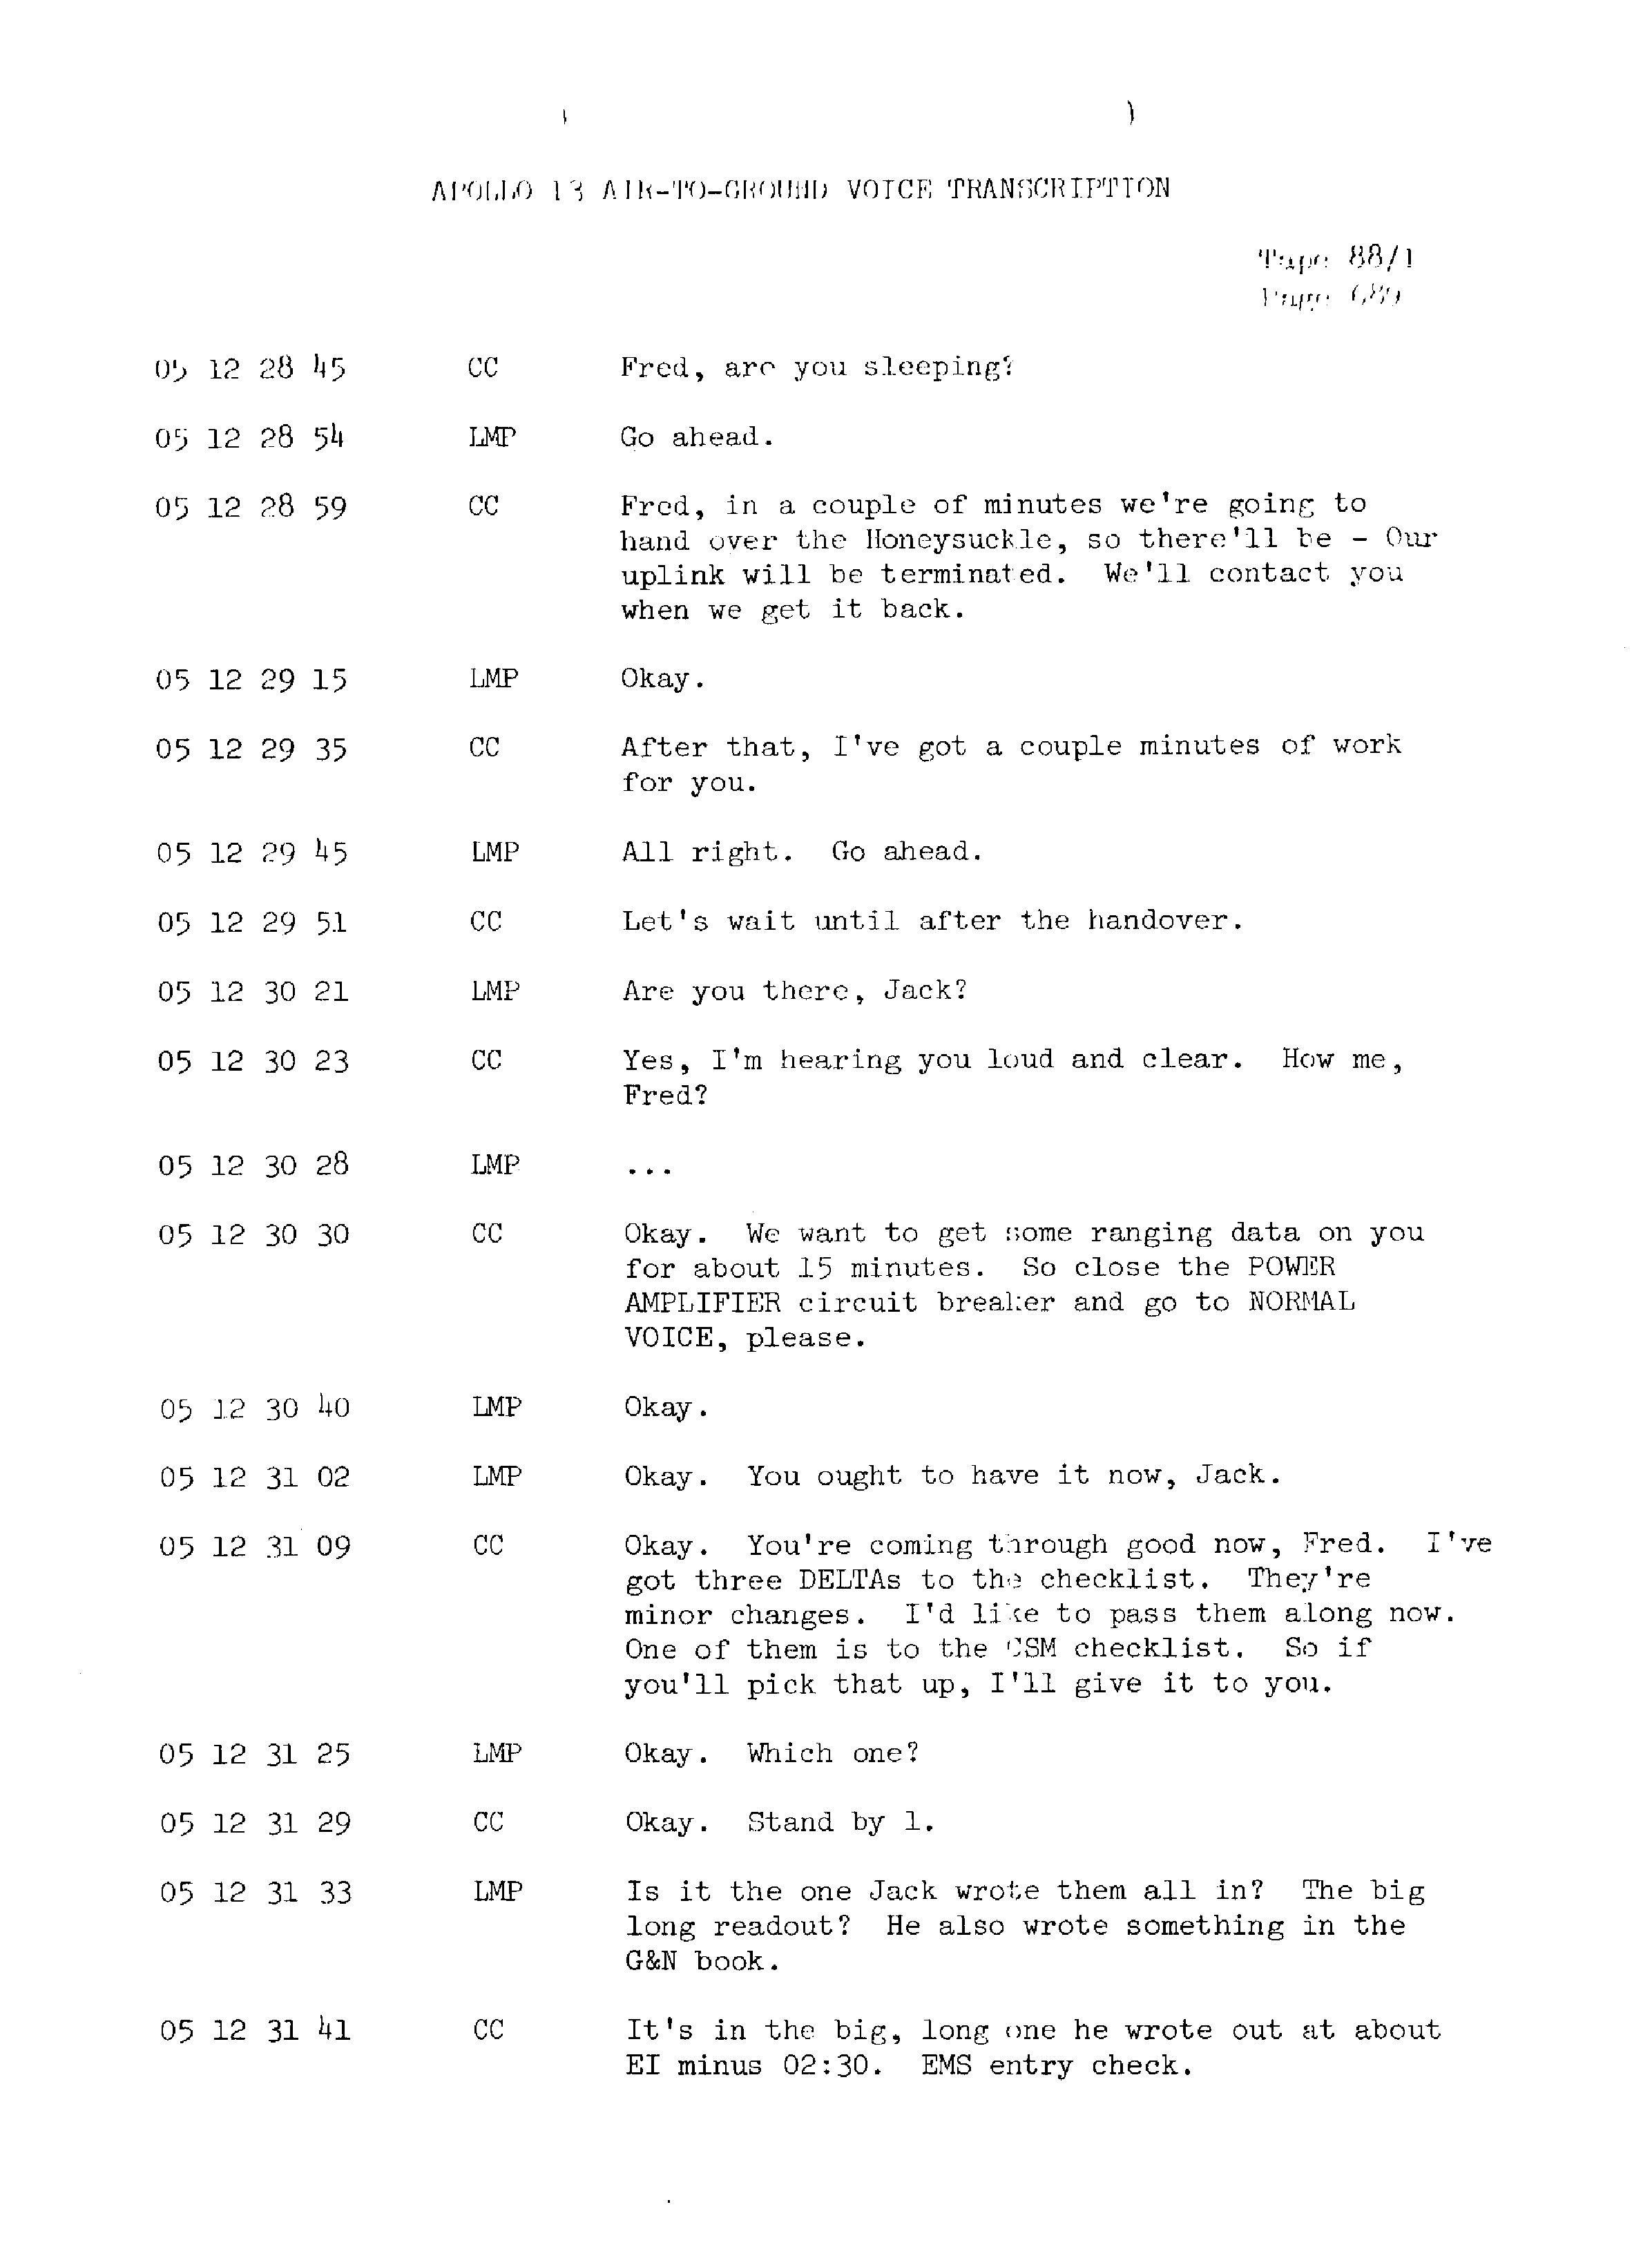 Page 696 of Apollo 13’s original transcript